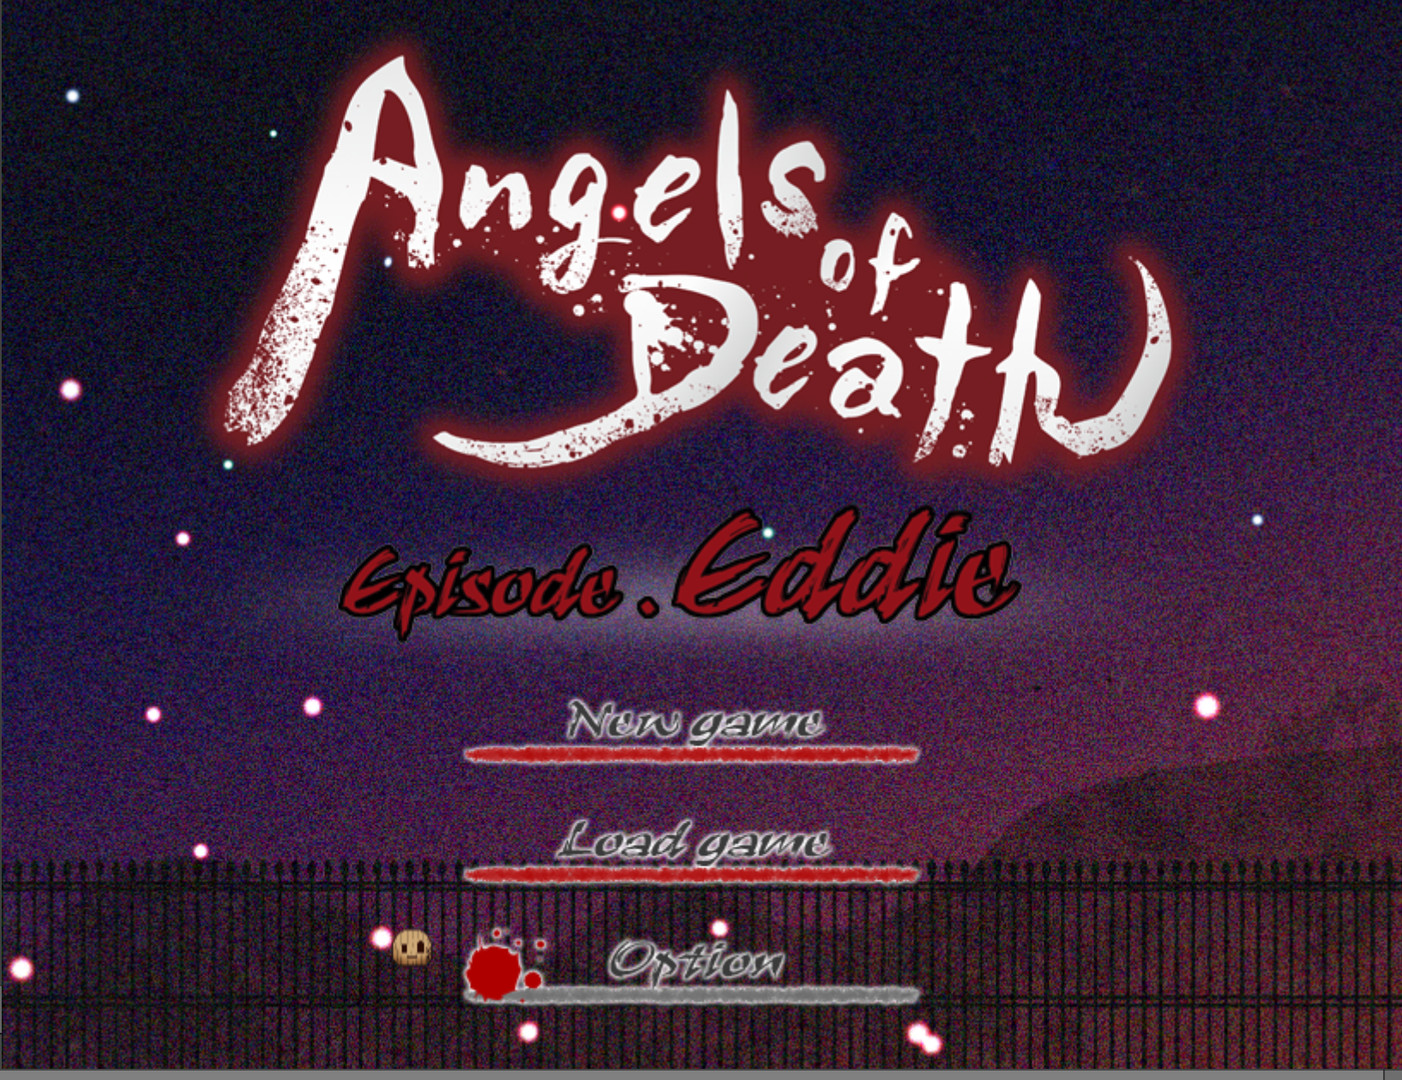 Steam Community :: Angels of Death Episode.Eddie